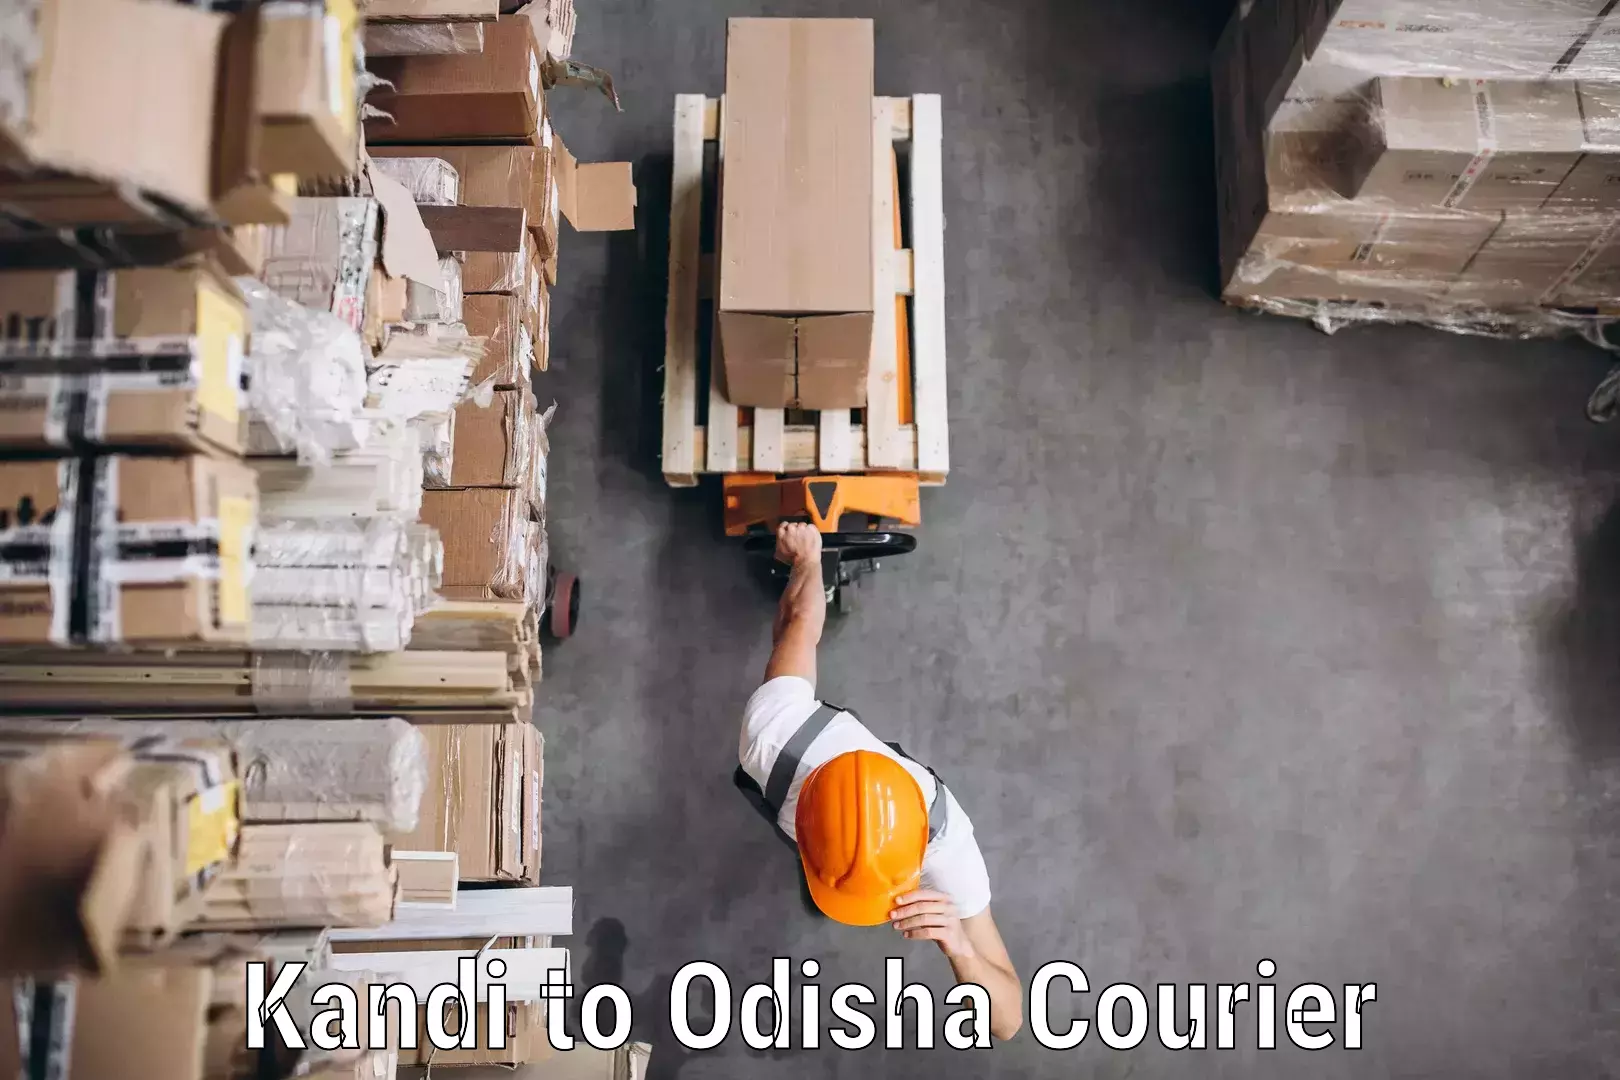 Full-service courier options Kandi to Bhawanipatna